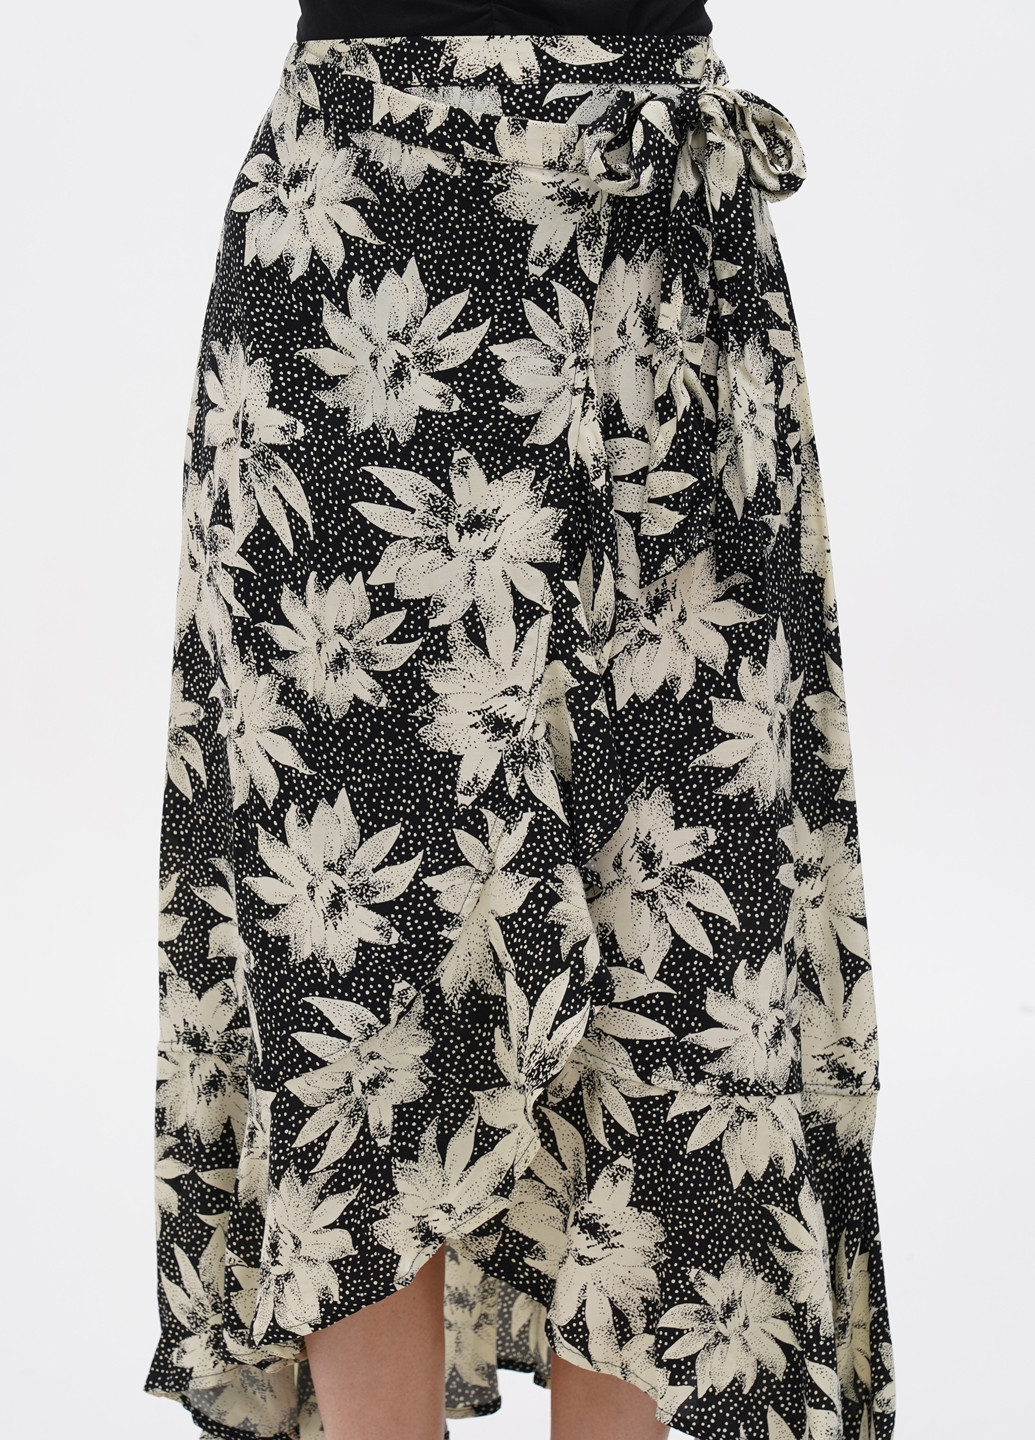 Черно-белая кэжуал цветочной расцветки юбка Whistles на запах